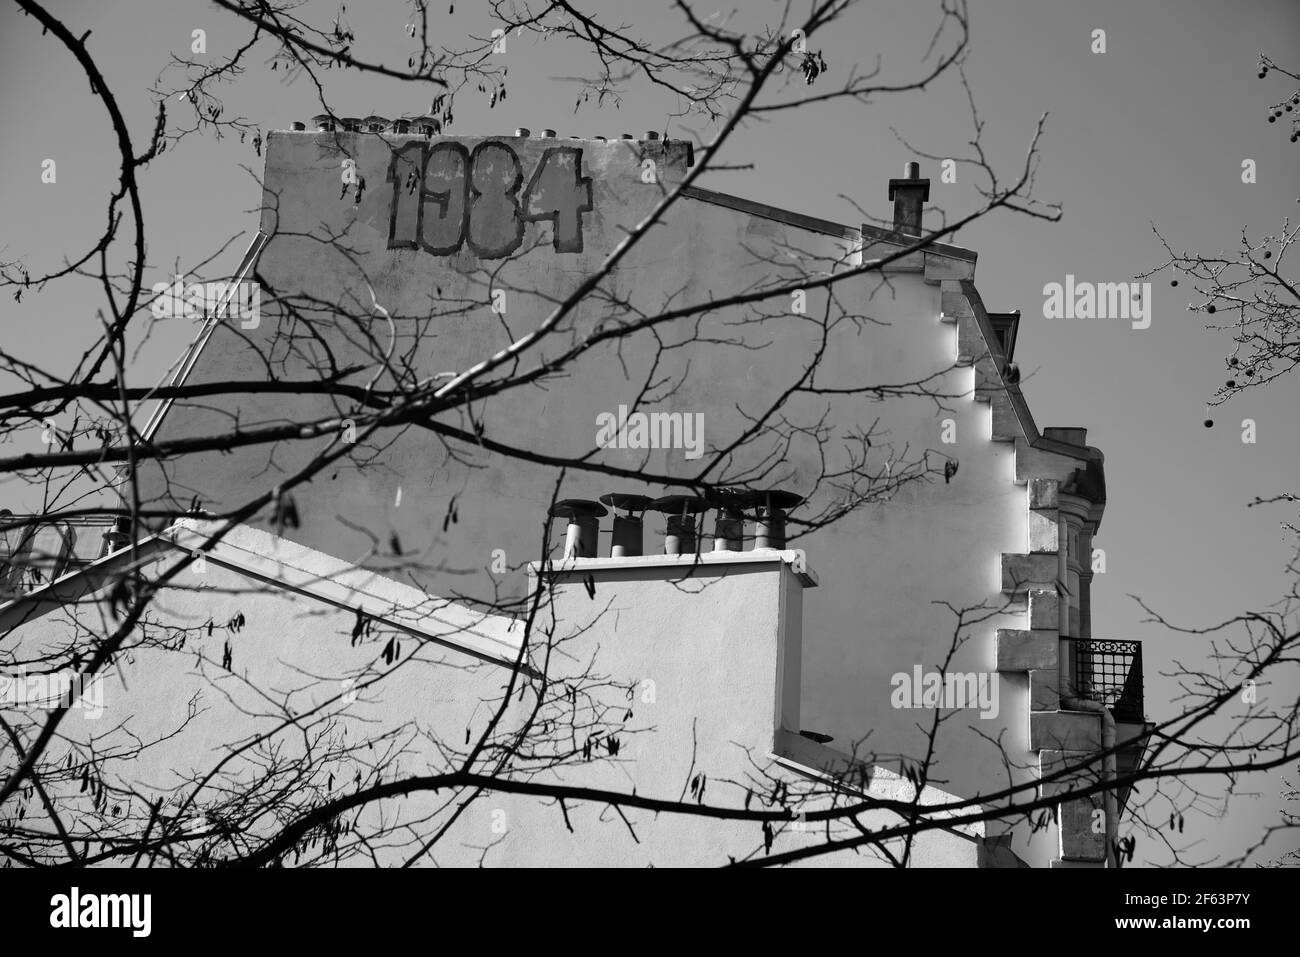 PARIS, FRANCE - 6 MARS 2021 : 1984 Nineteen Eighty-four graffiti sur le mur d'un immeuble résidentiel typiquement parisien. Photo historique noir blanc Banque D'Images